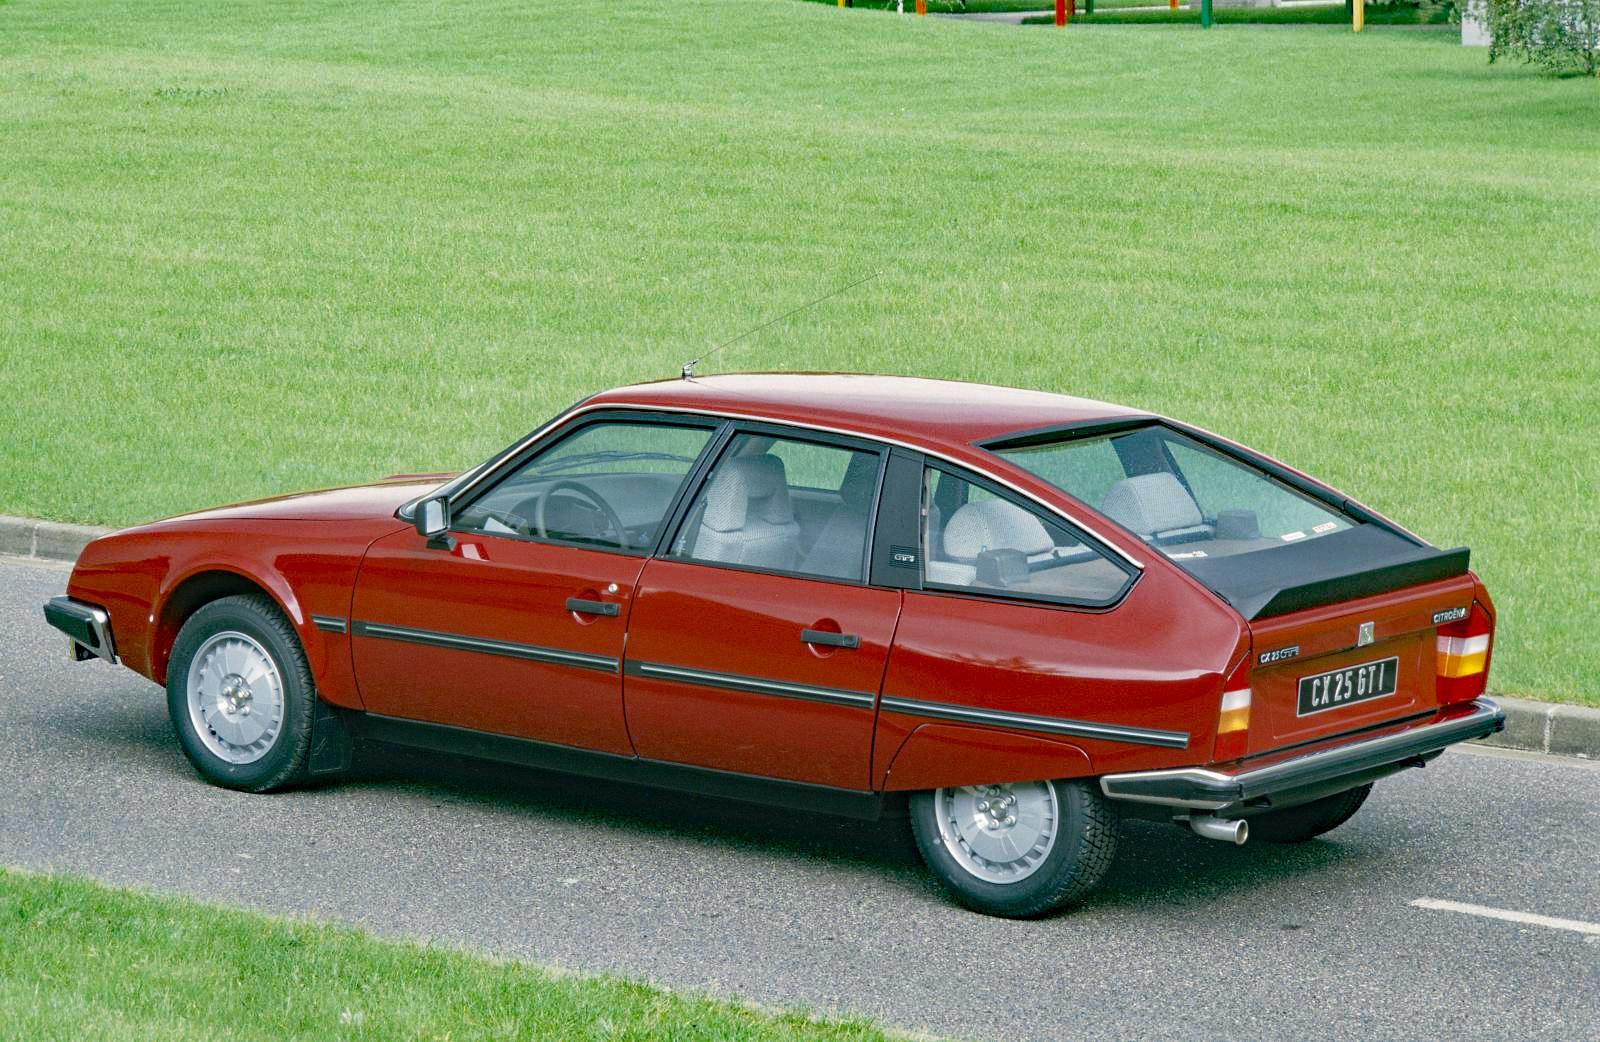 1984 CX 25 GTI Turbo